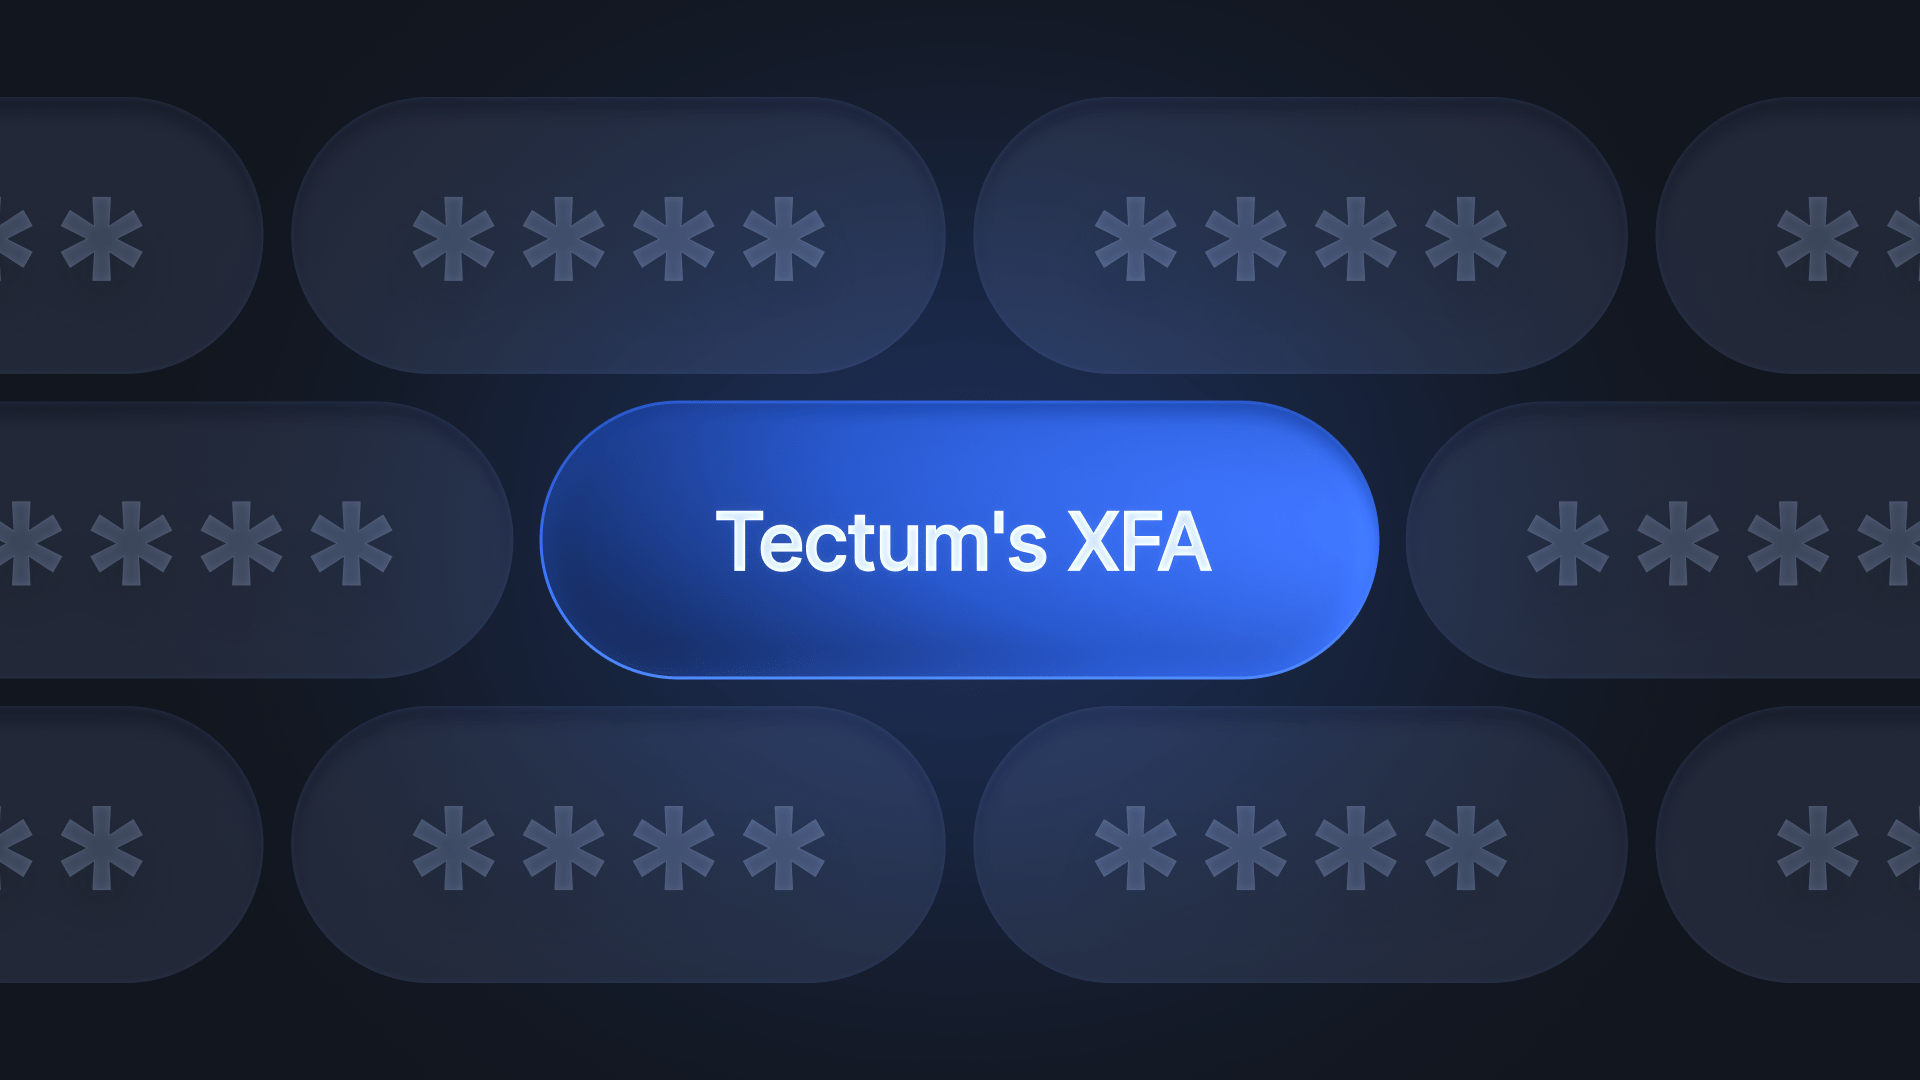 Tectum's XFactor Authenticator